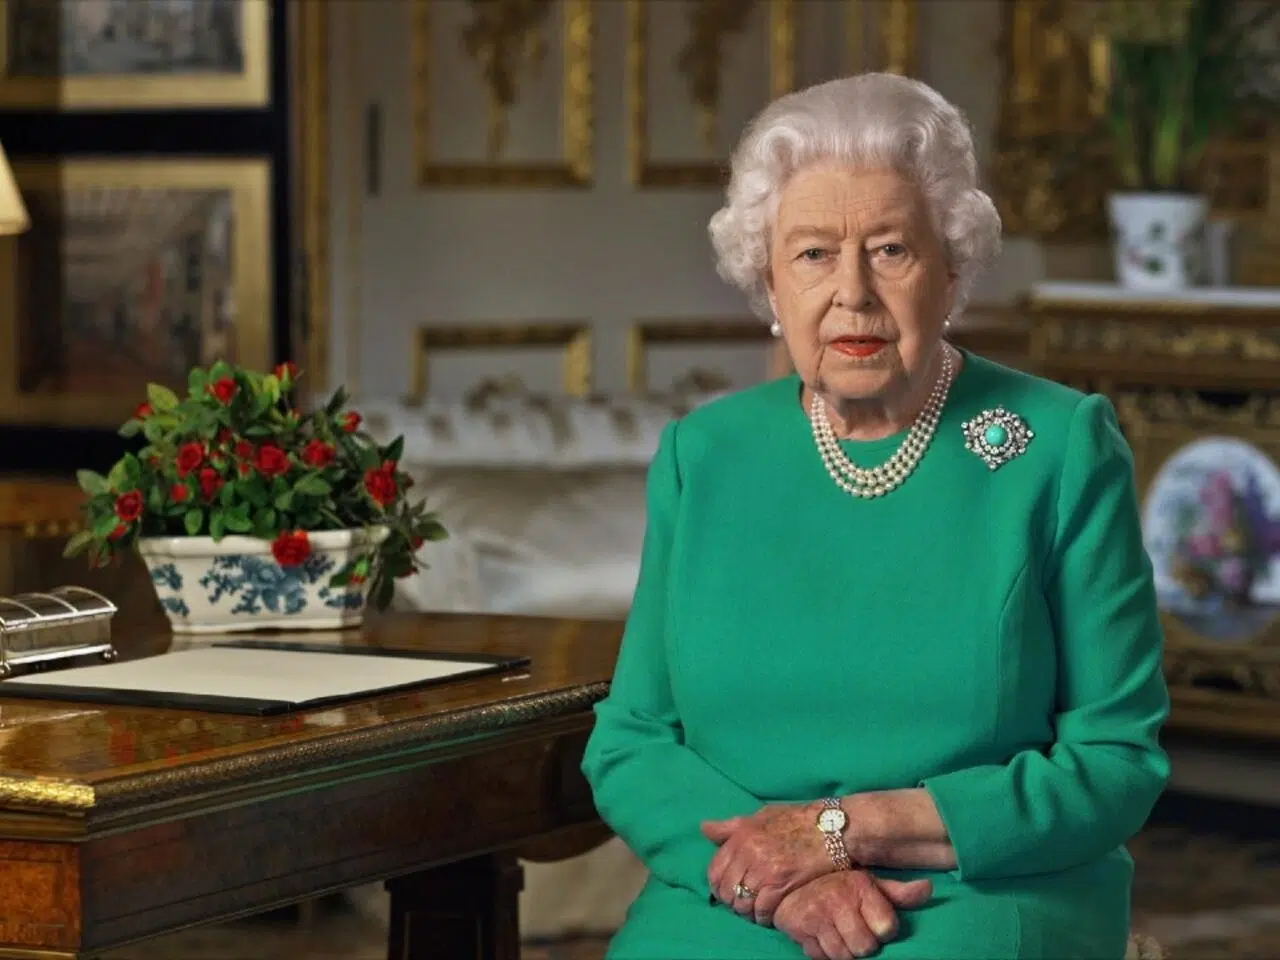 La Reina Isabel II dejó una misteriosa carta tiempo antes de morir ¡No podrá ser abierta hasta 2085!